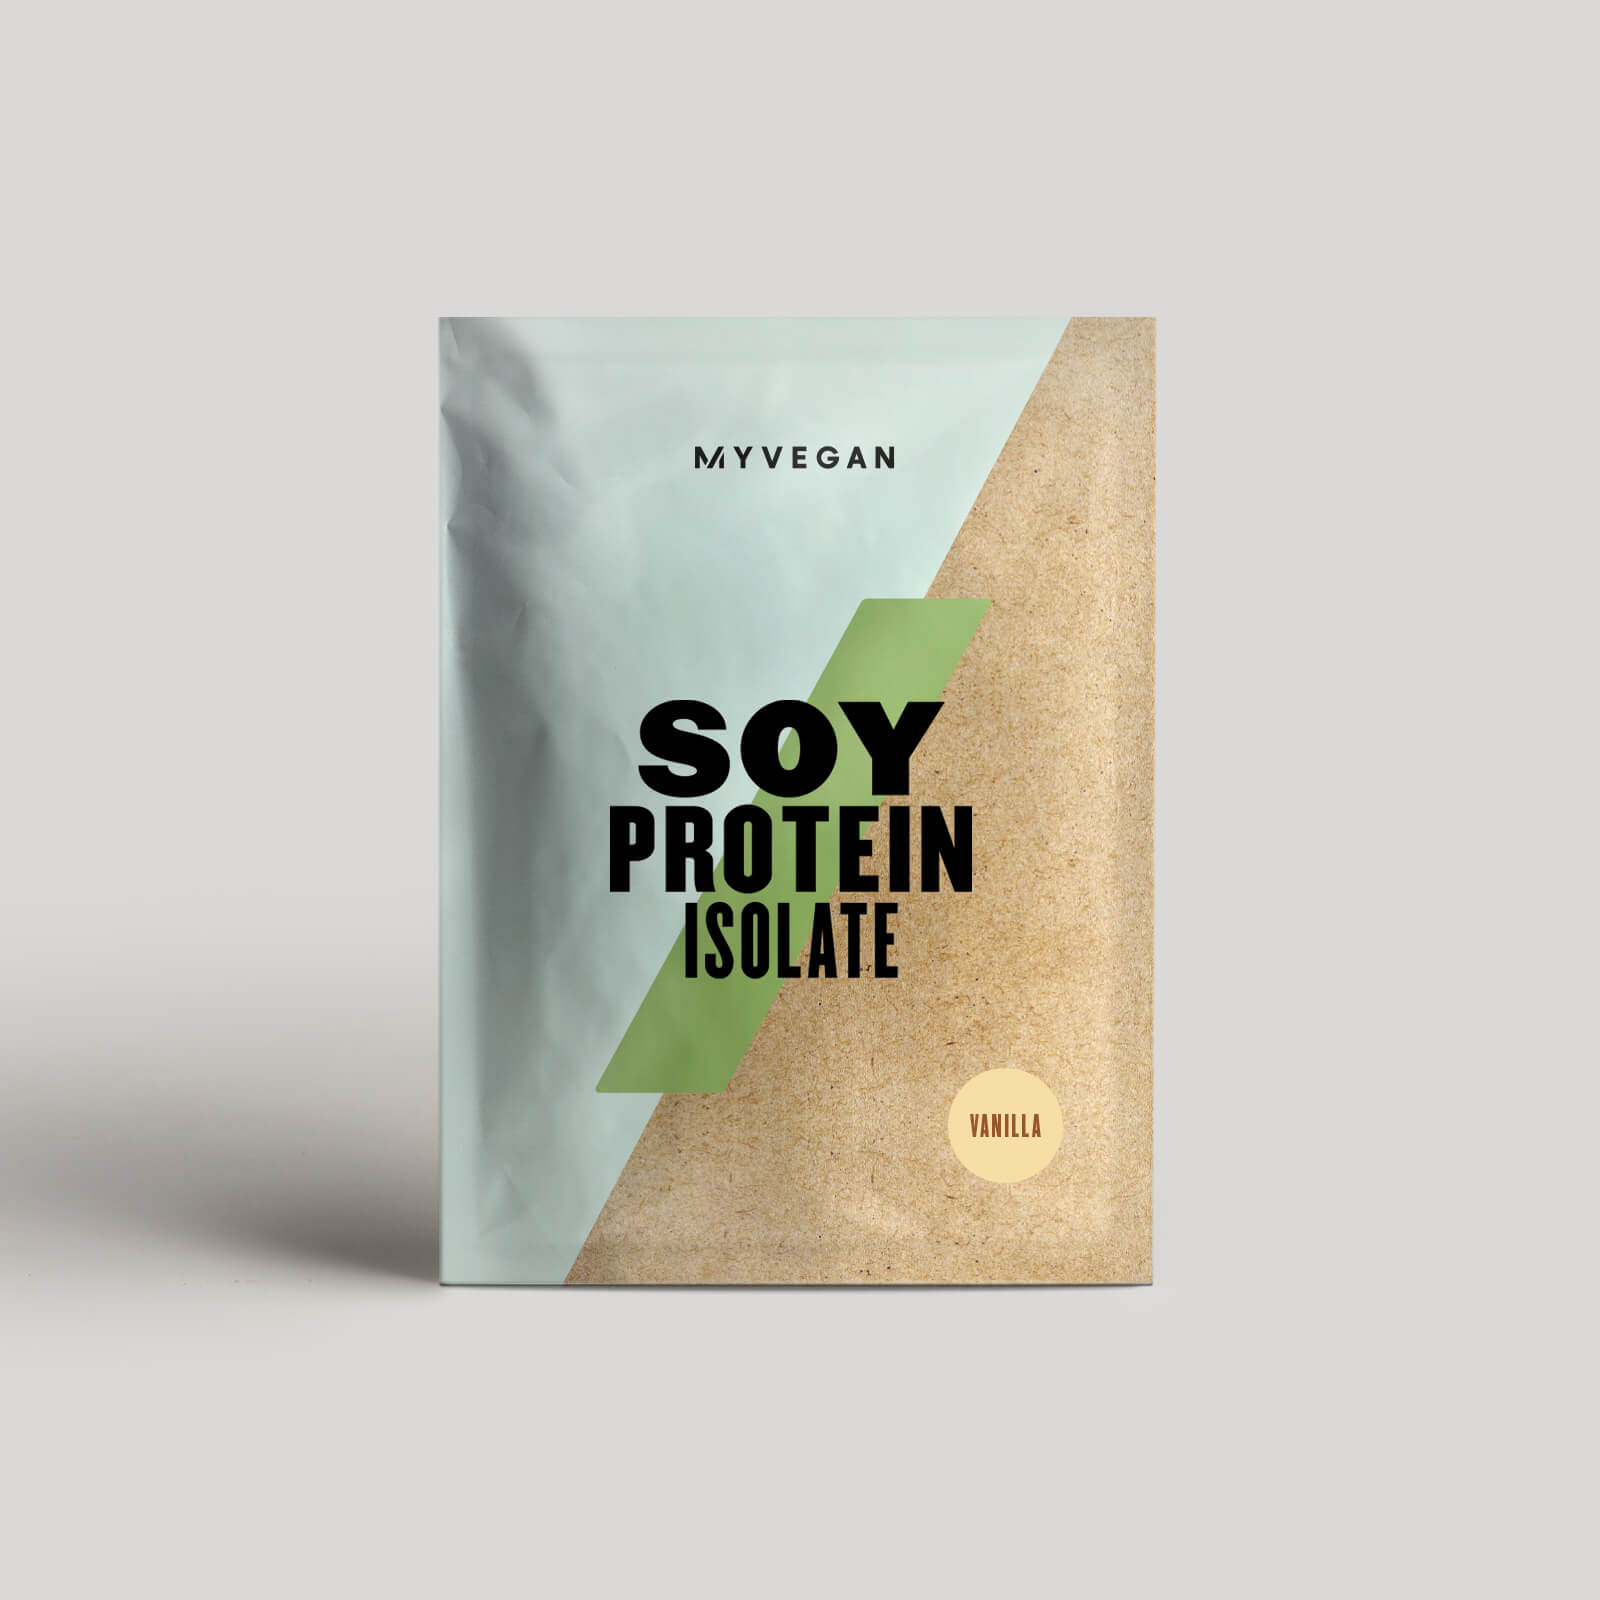 Myvegan Soy Protein Isolate (Smakprov) - 30g - Vanilla